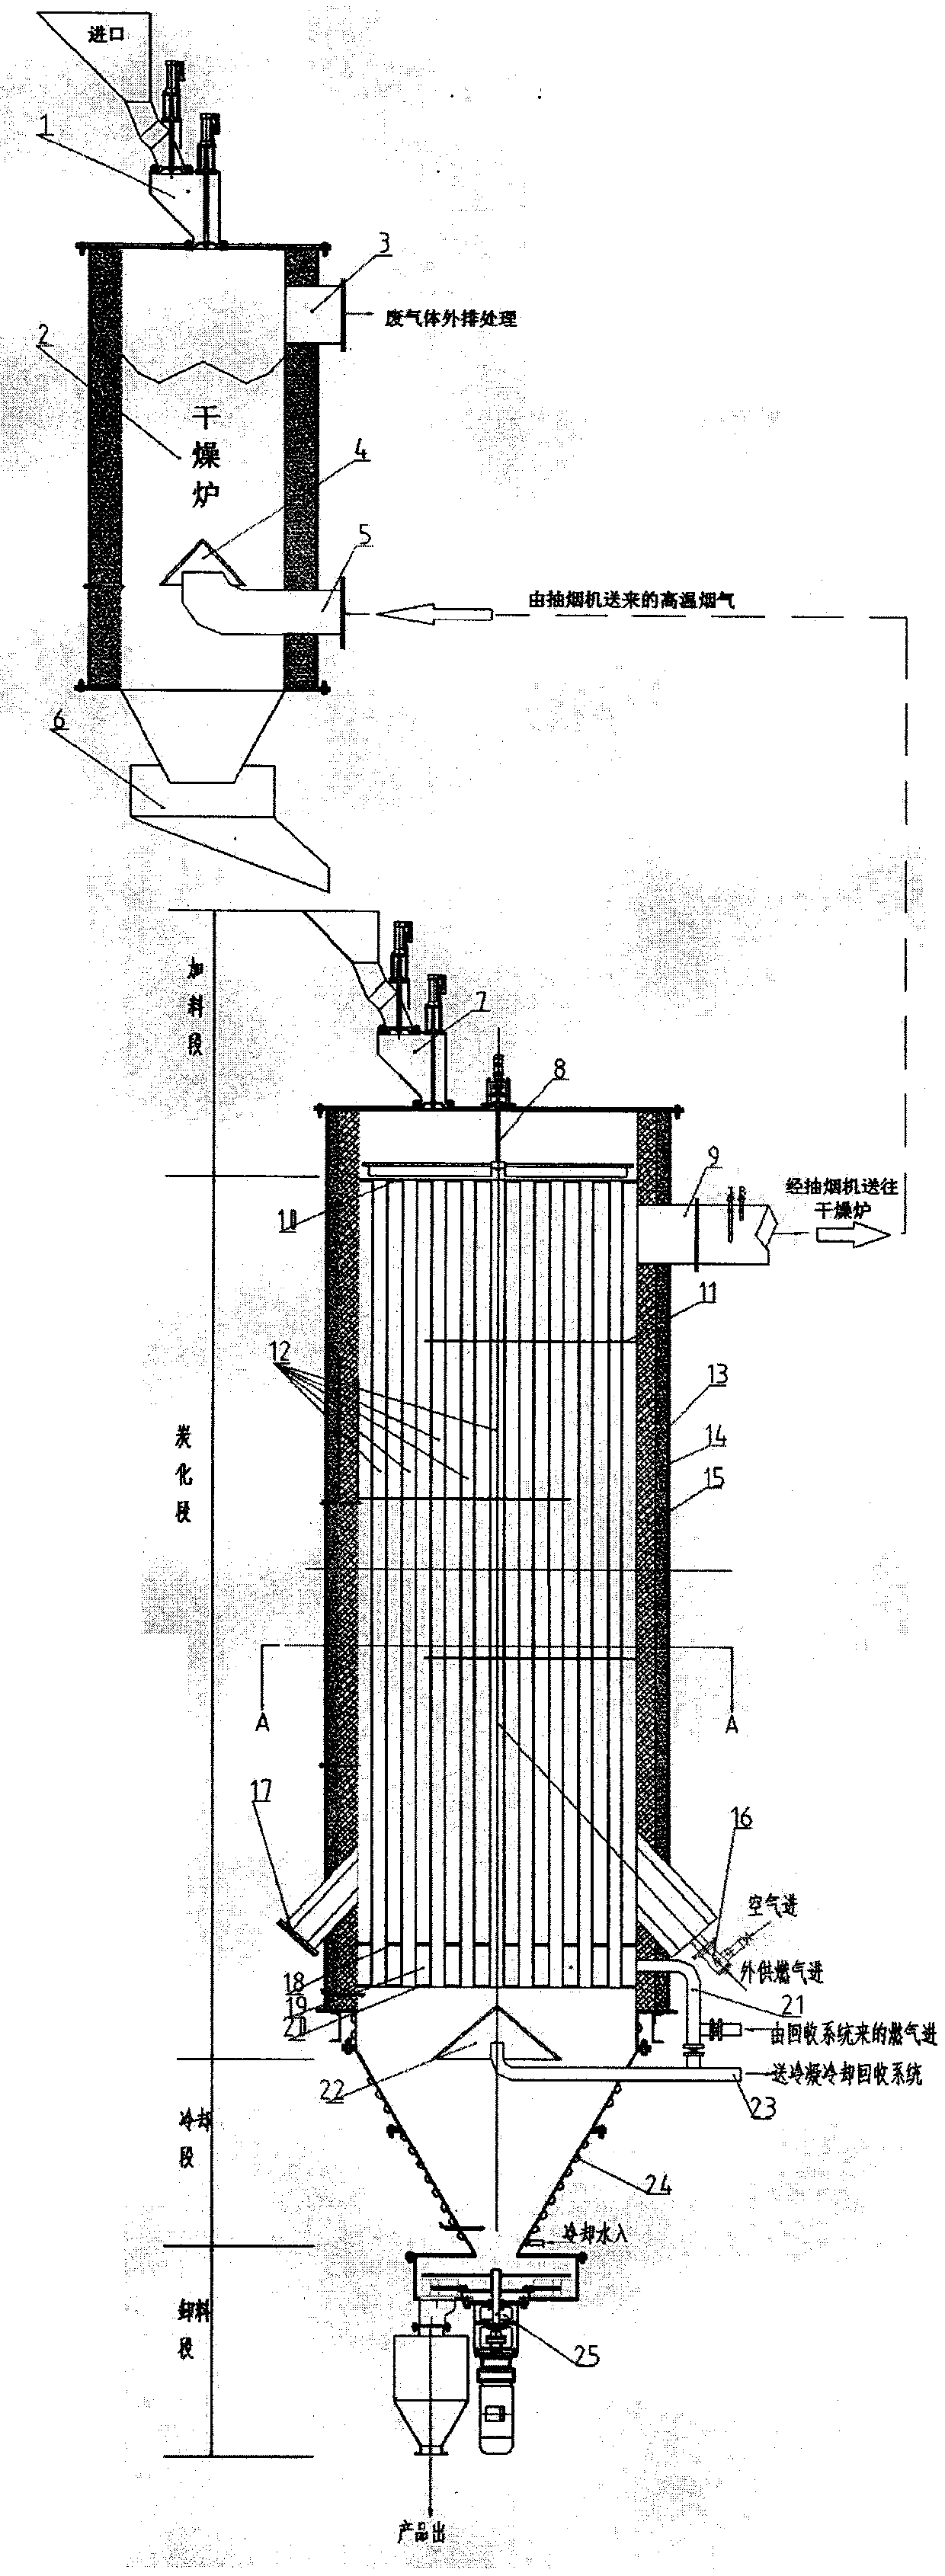 Vertical-shaft tube carbonization furnace